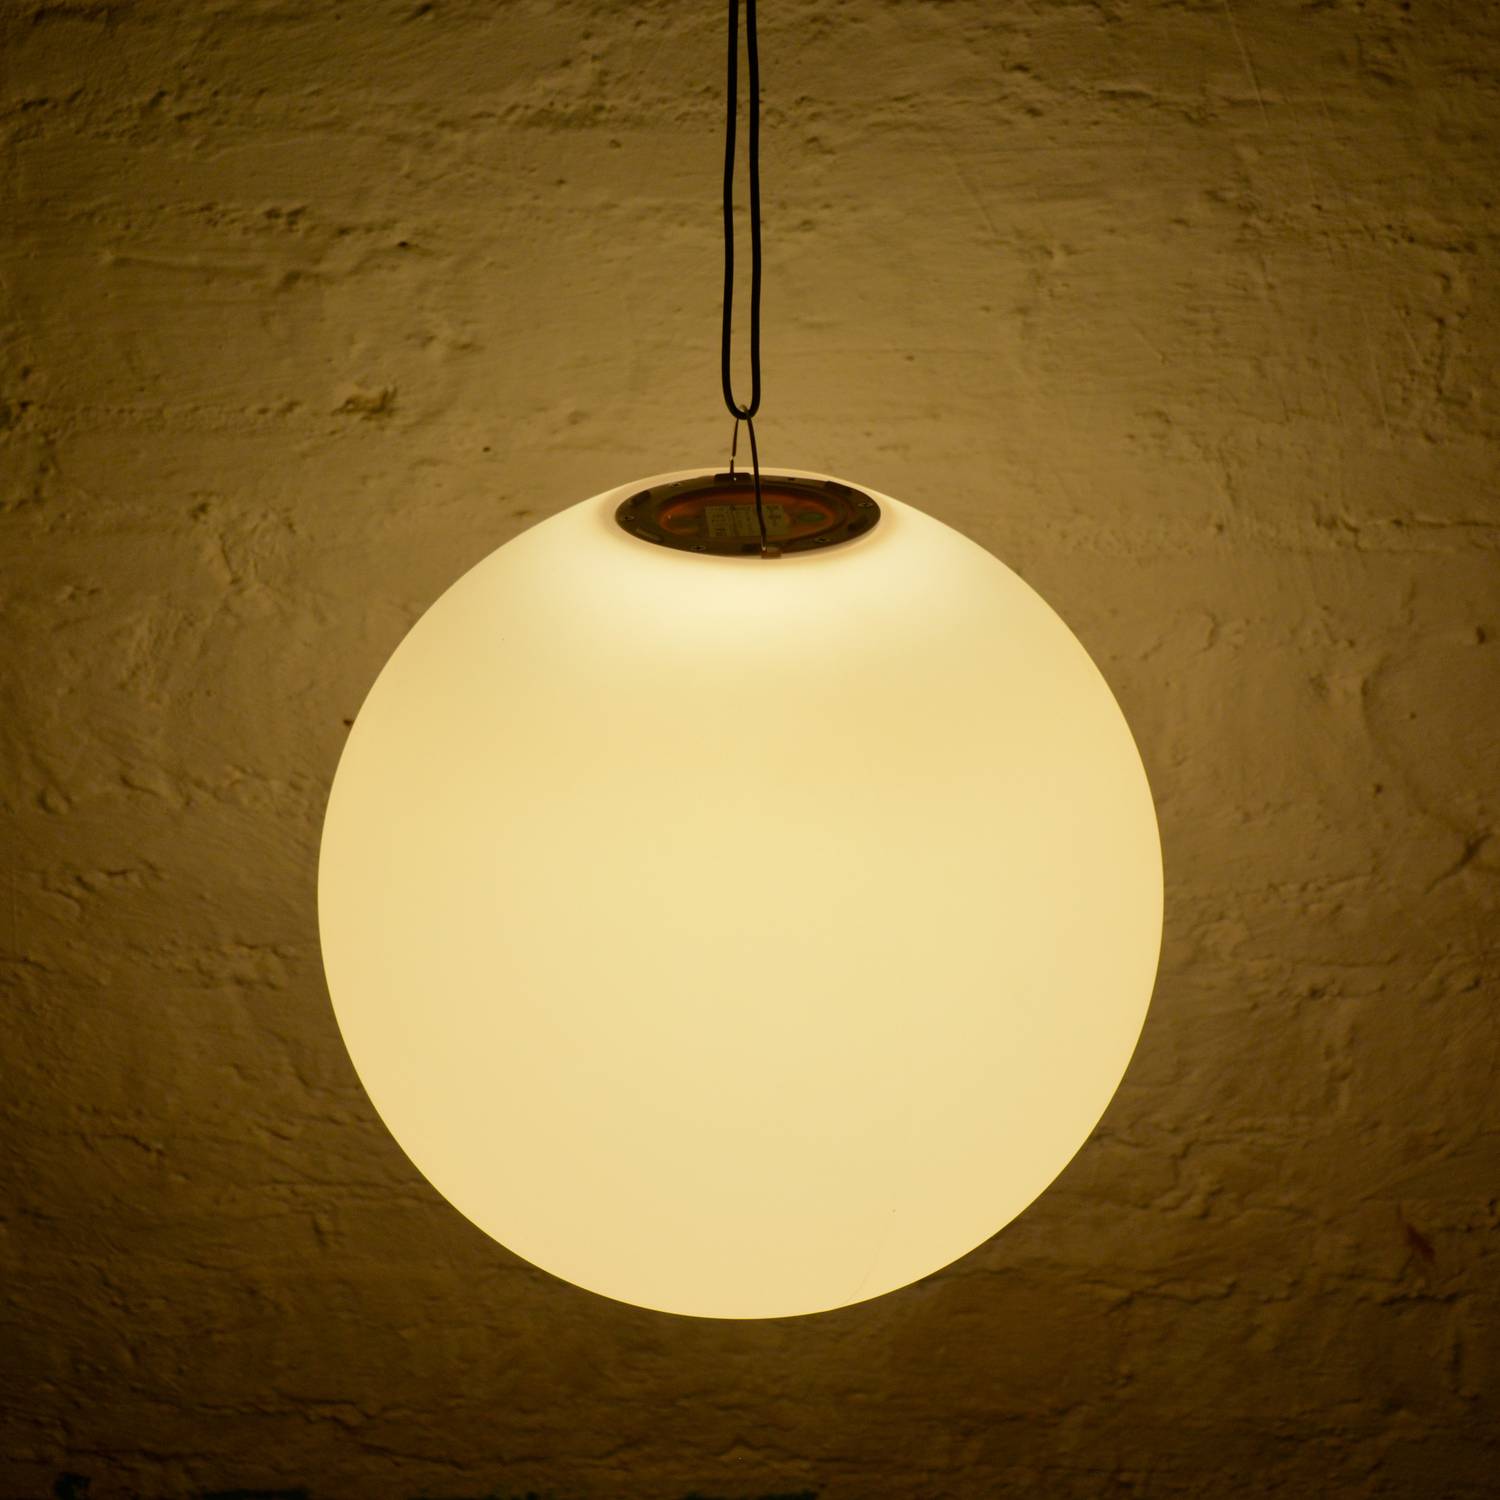 LED Bollamp 40cm – Decoratieve lichtbol, Ø40cm, warm wit, afstandsbediening Photo5